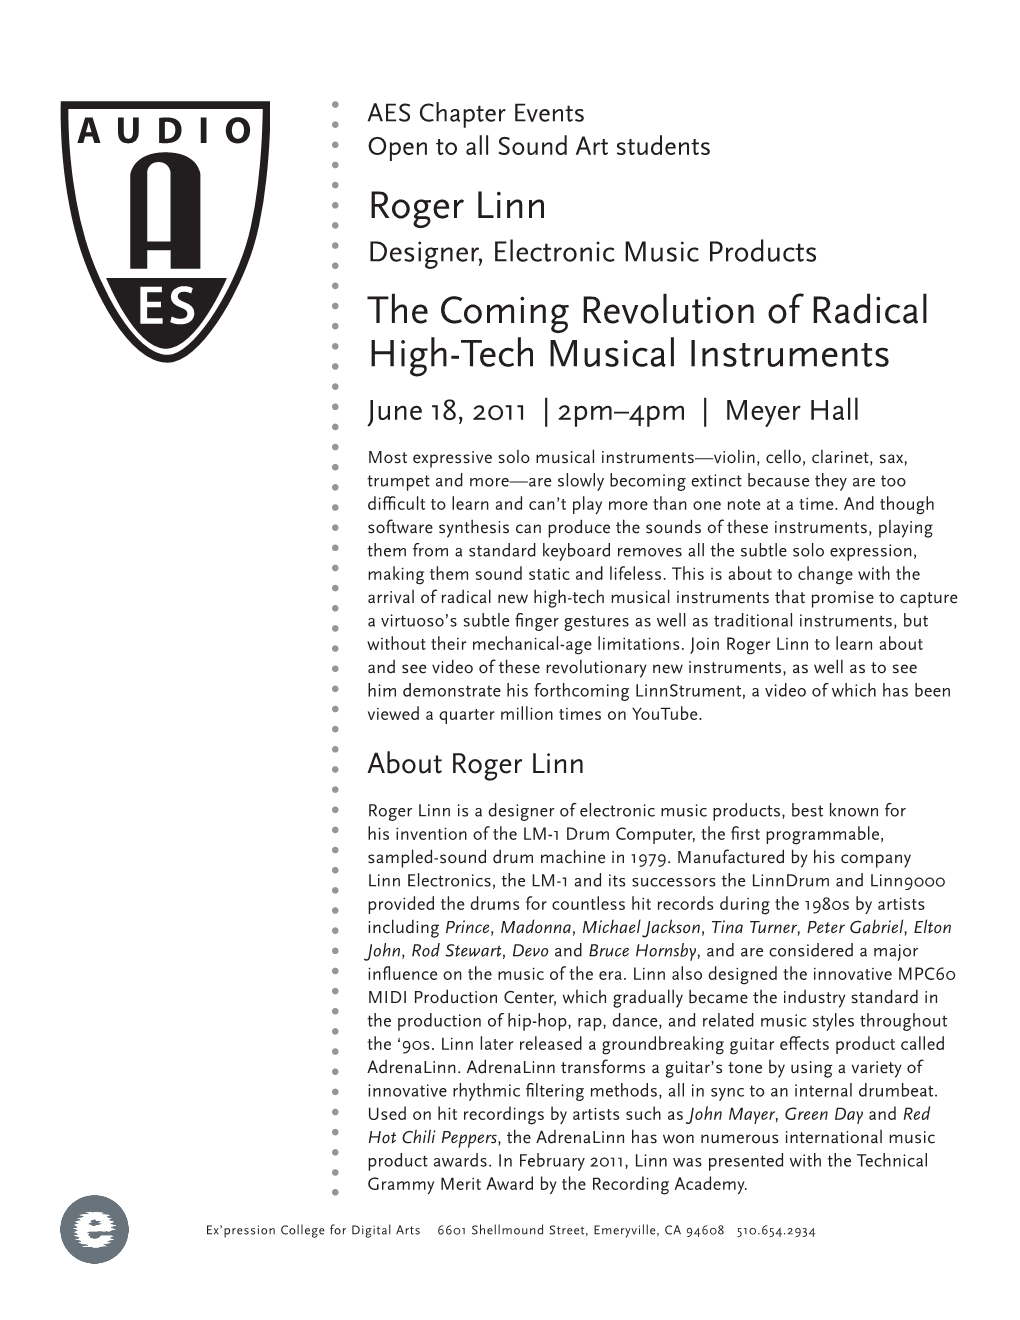 Roger Linn the Coming Revolution of Radical High-Tech Musical